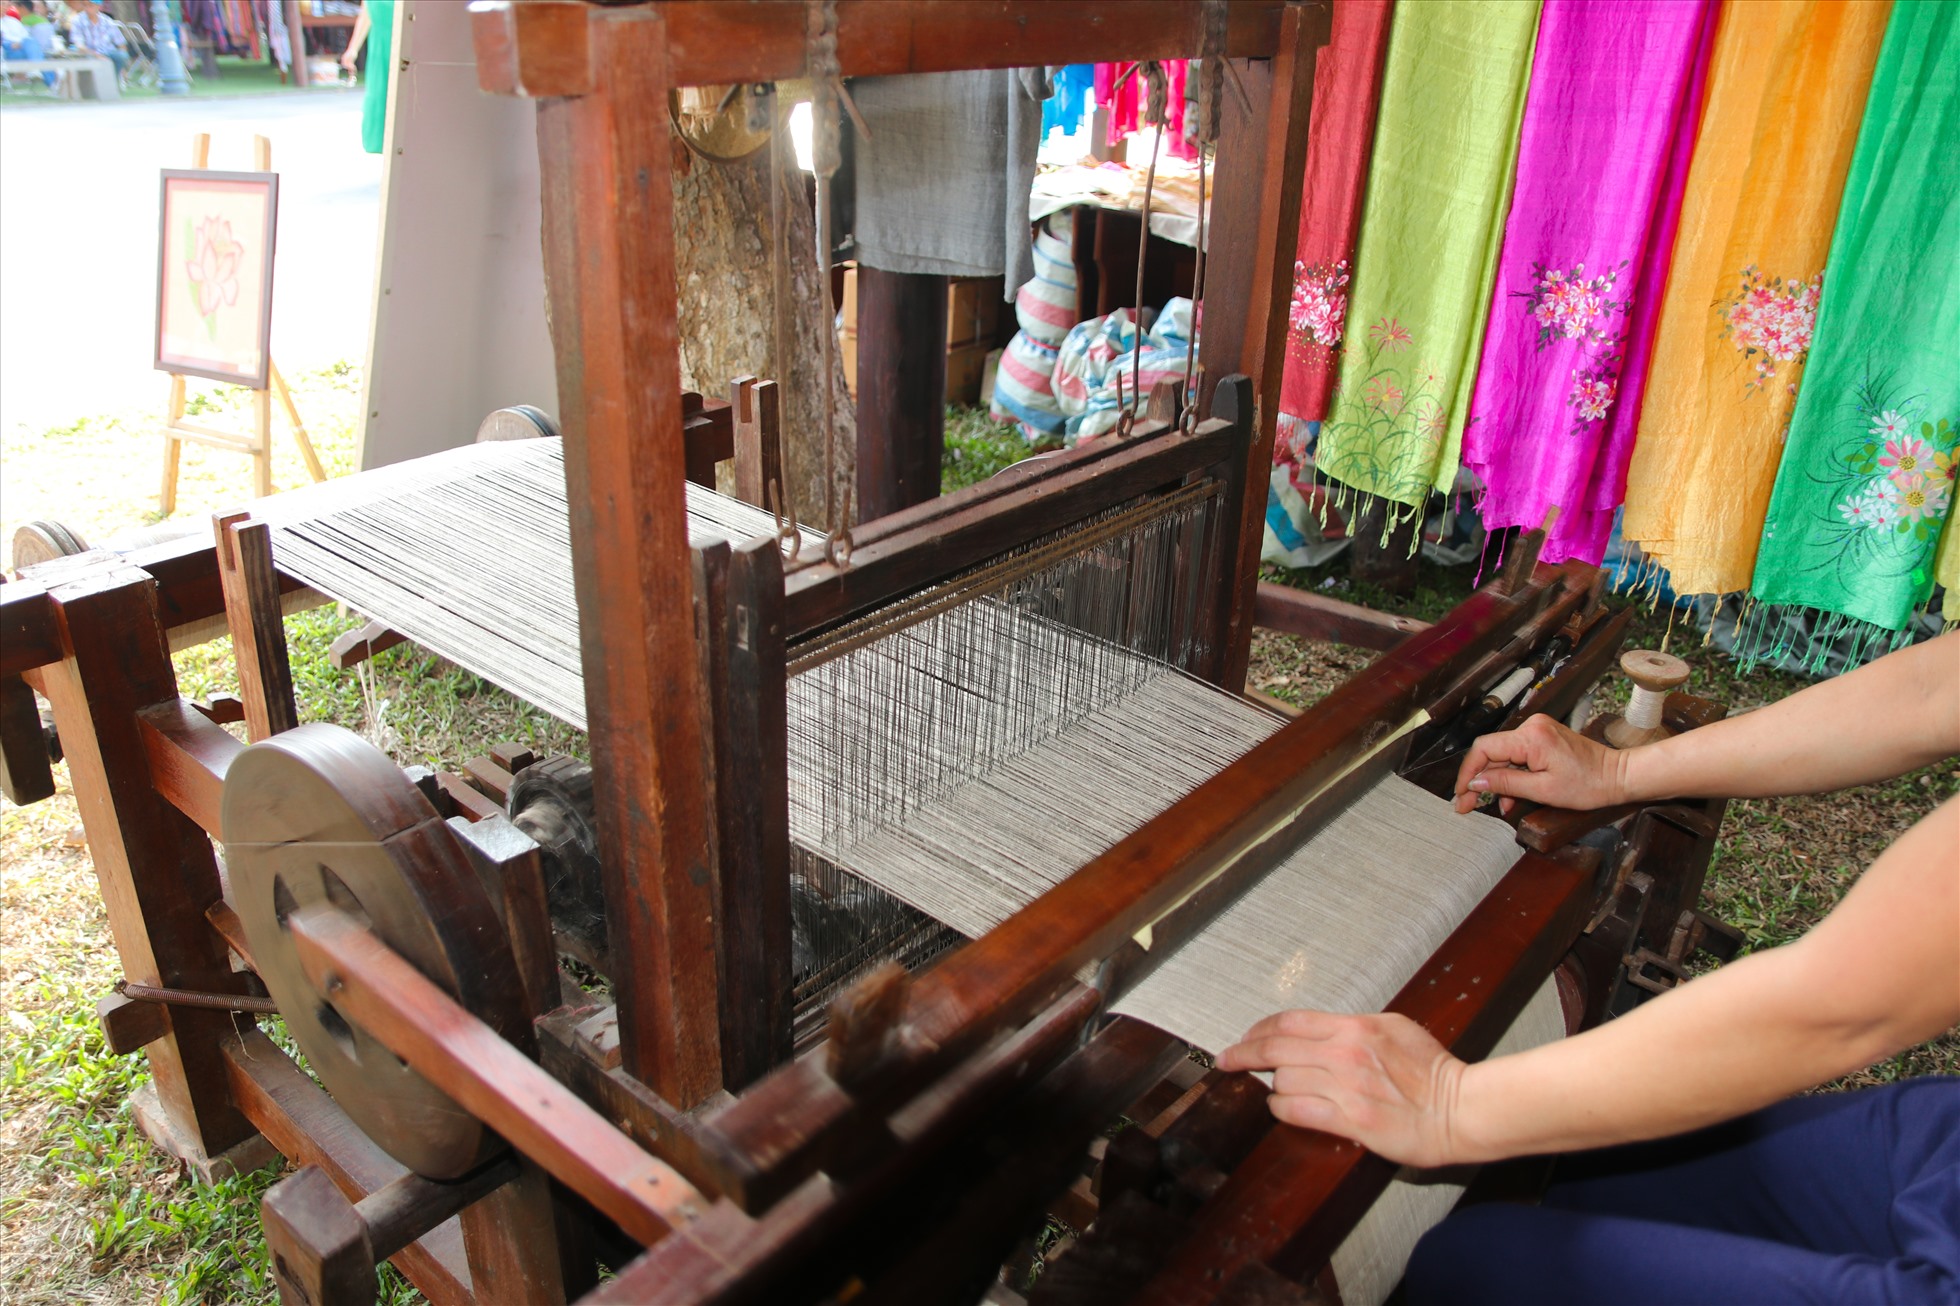 Chế tác tơ sen, tranh lụa của nghệ nhân Phan Thị Thuận (Hà Nội) – người đầu tiên thành công dệt lụa tơ sen.